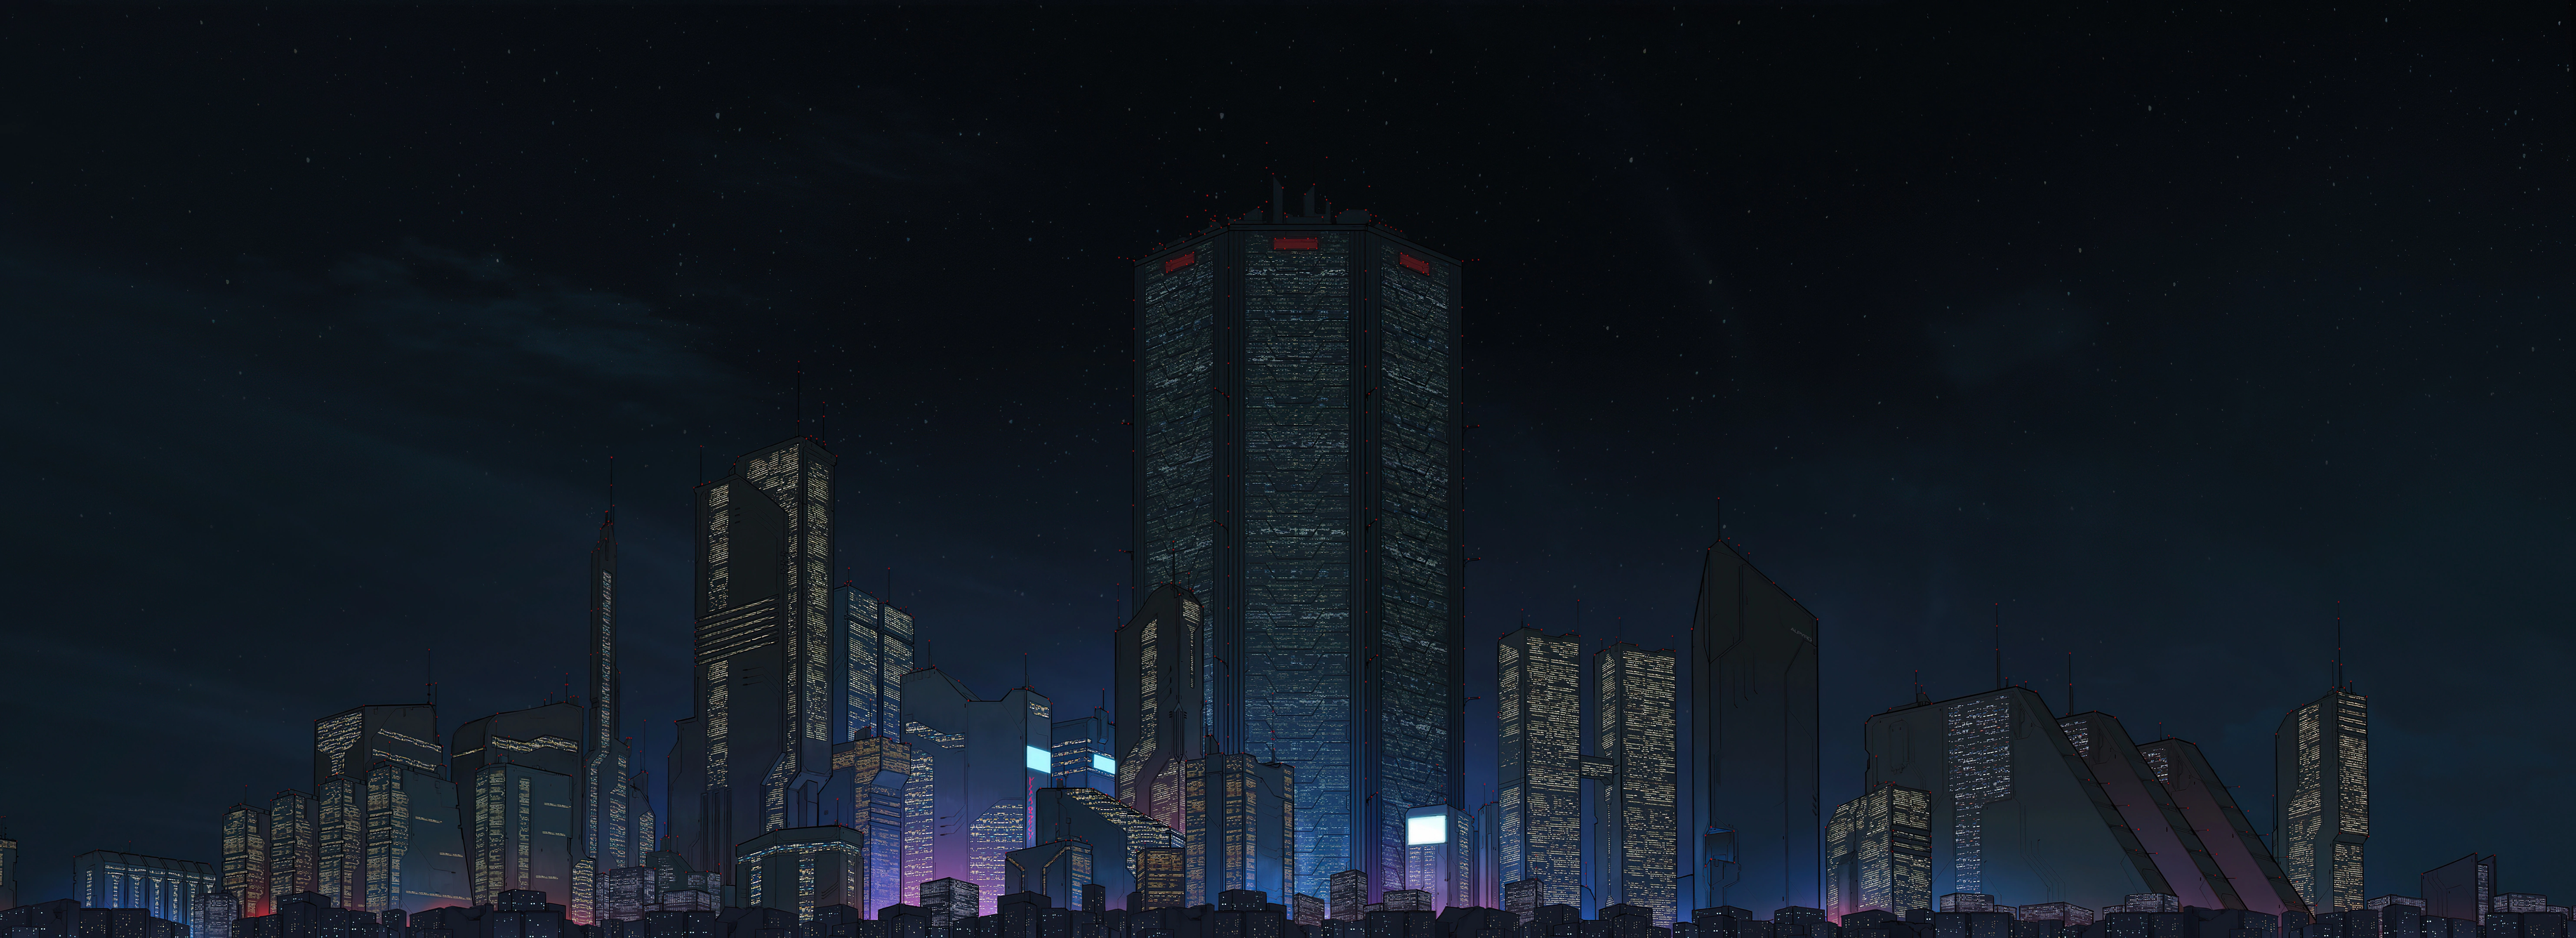 cyberpunk city buildings 5k fs.jpg